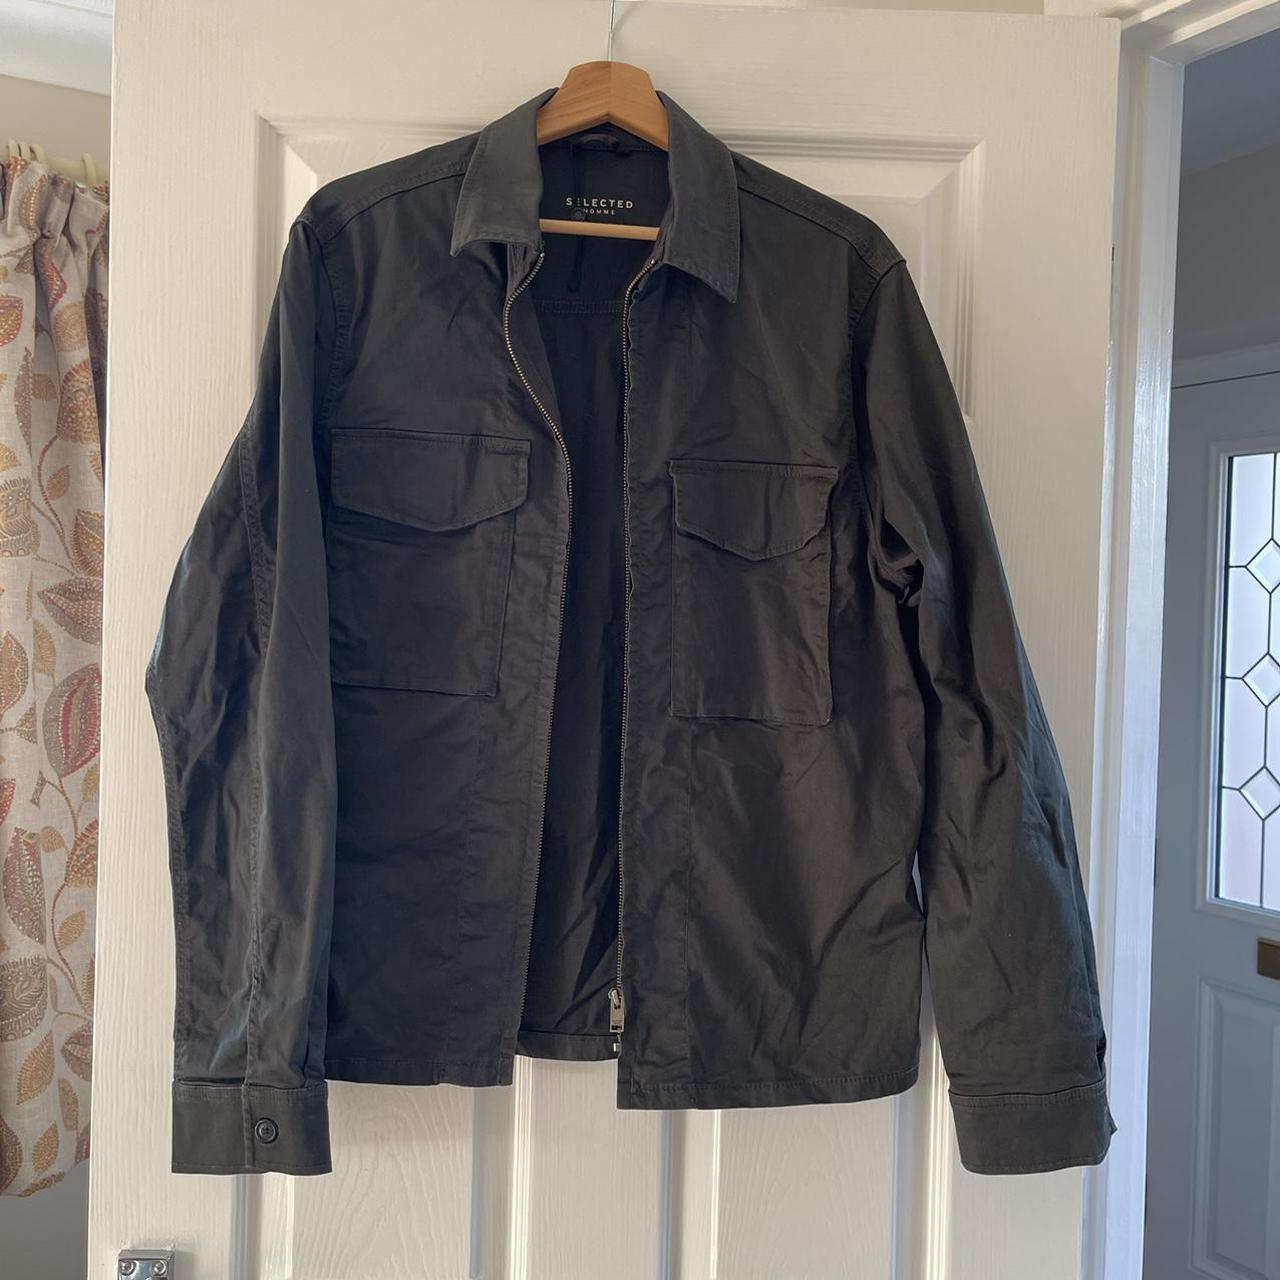 Selected homme khaki cargo smart jacket size large... - Depop